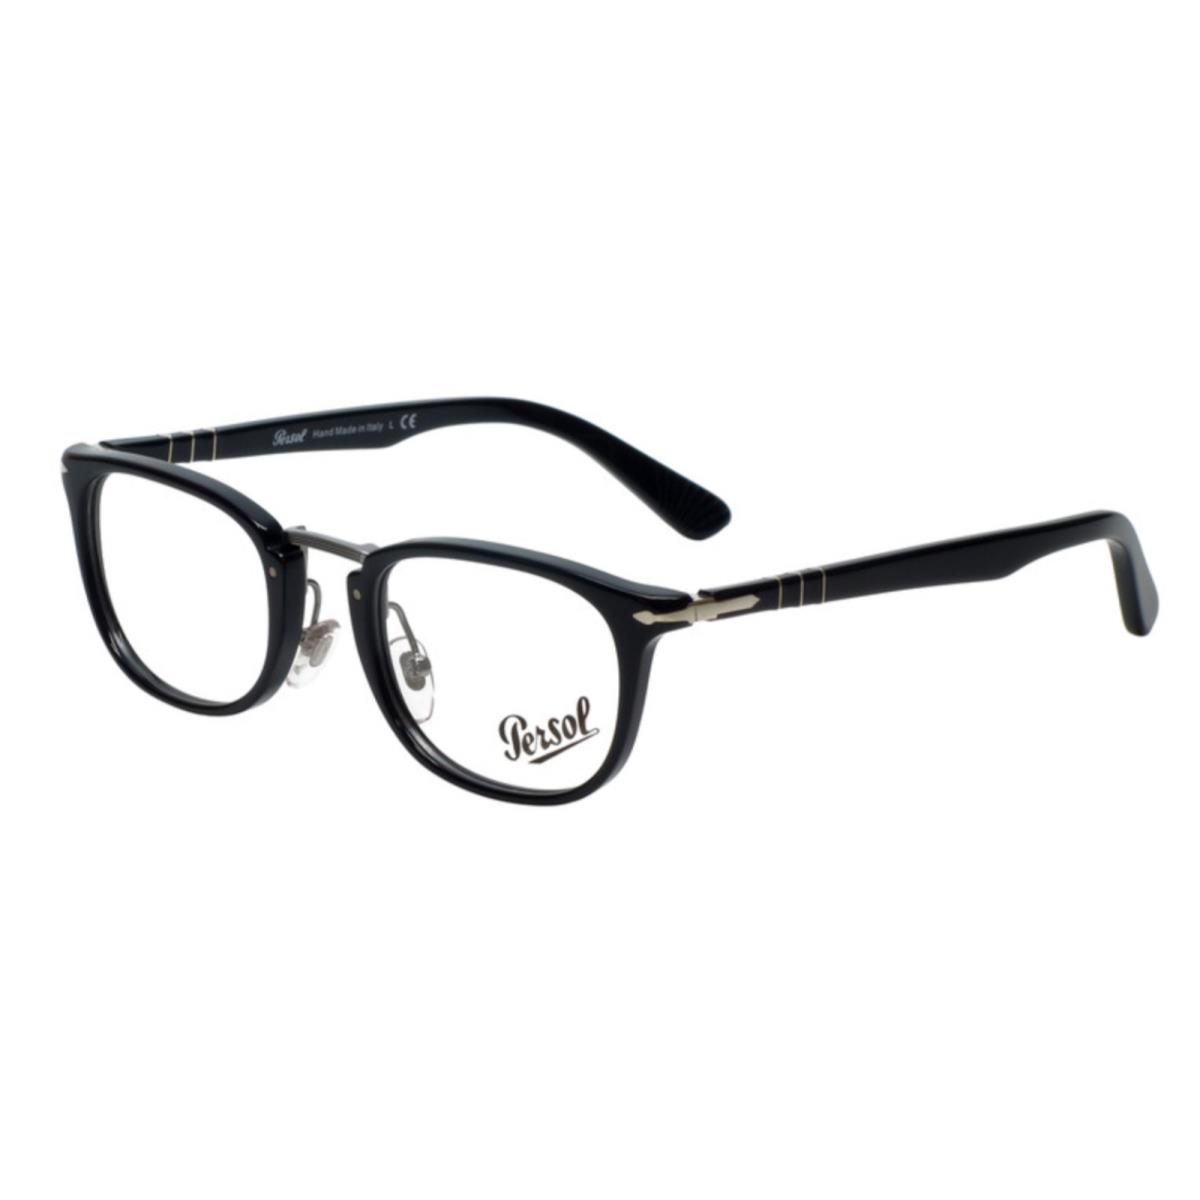 Persol Typewriter Edition Eyeglasses 3126-V 95 50-22 Black Silver Frames - Frame: Black, Lens: